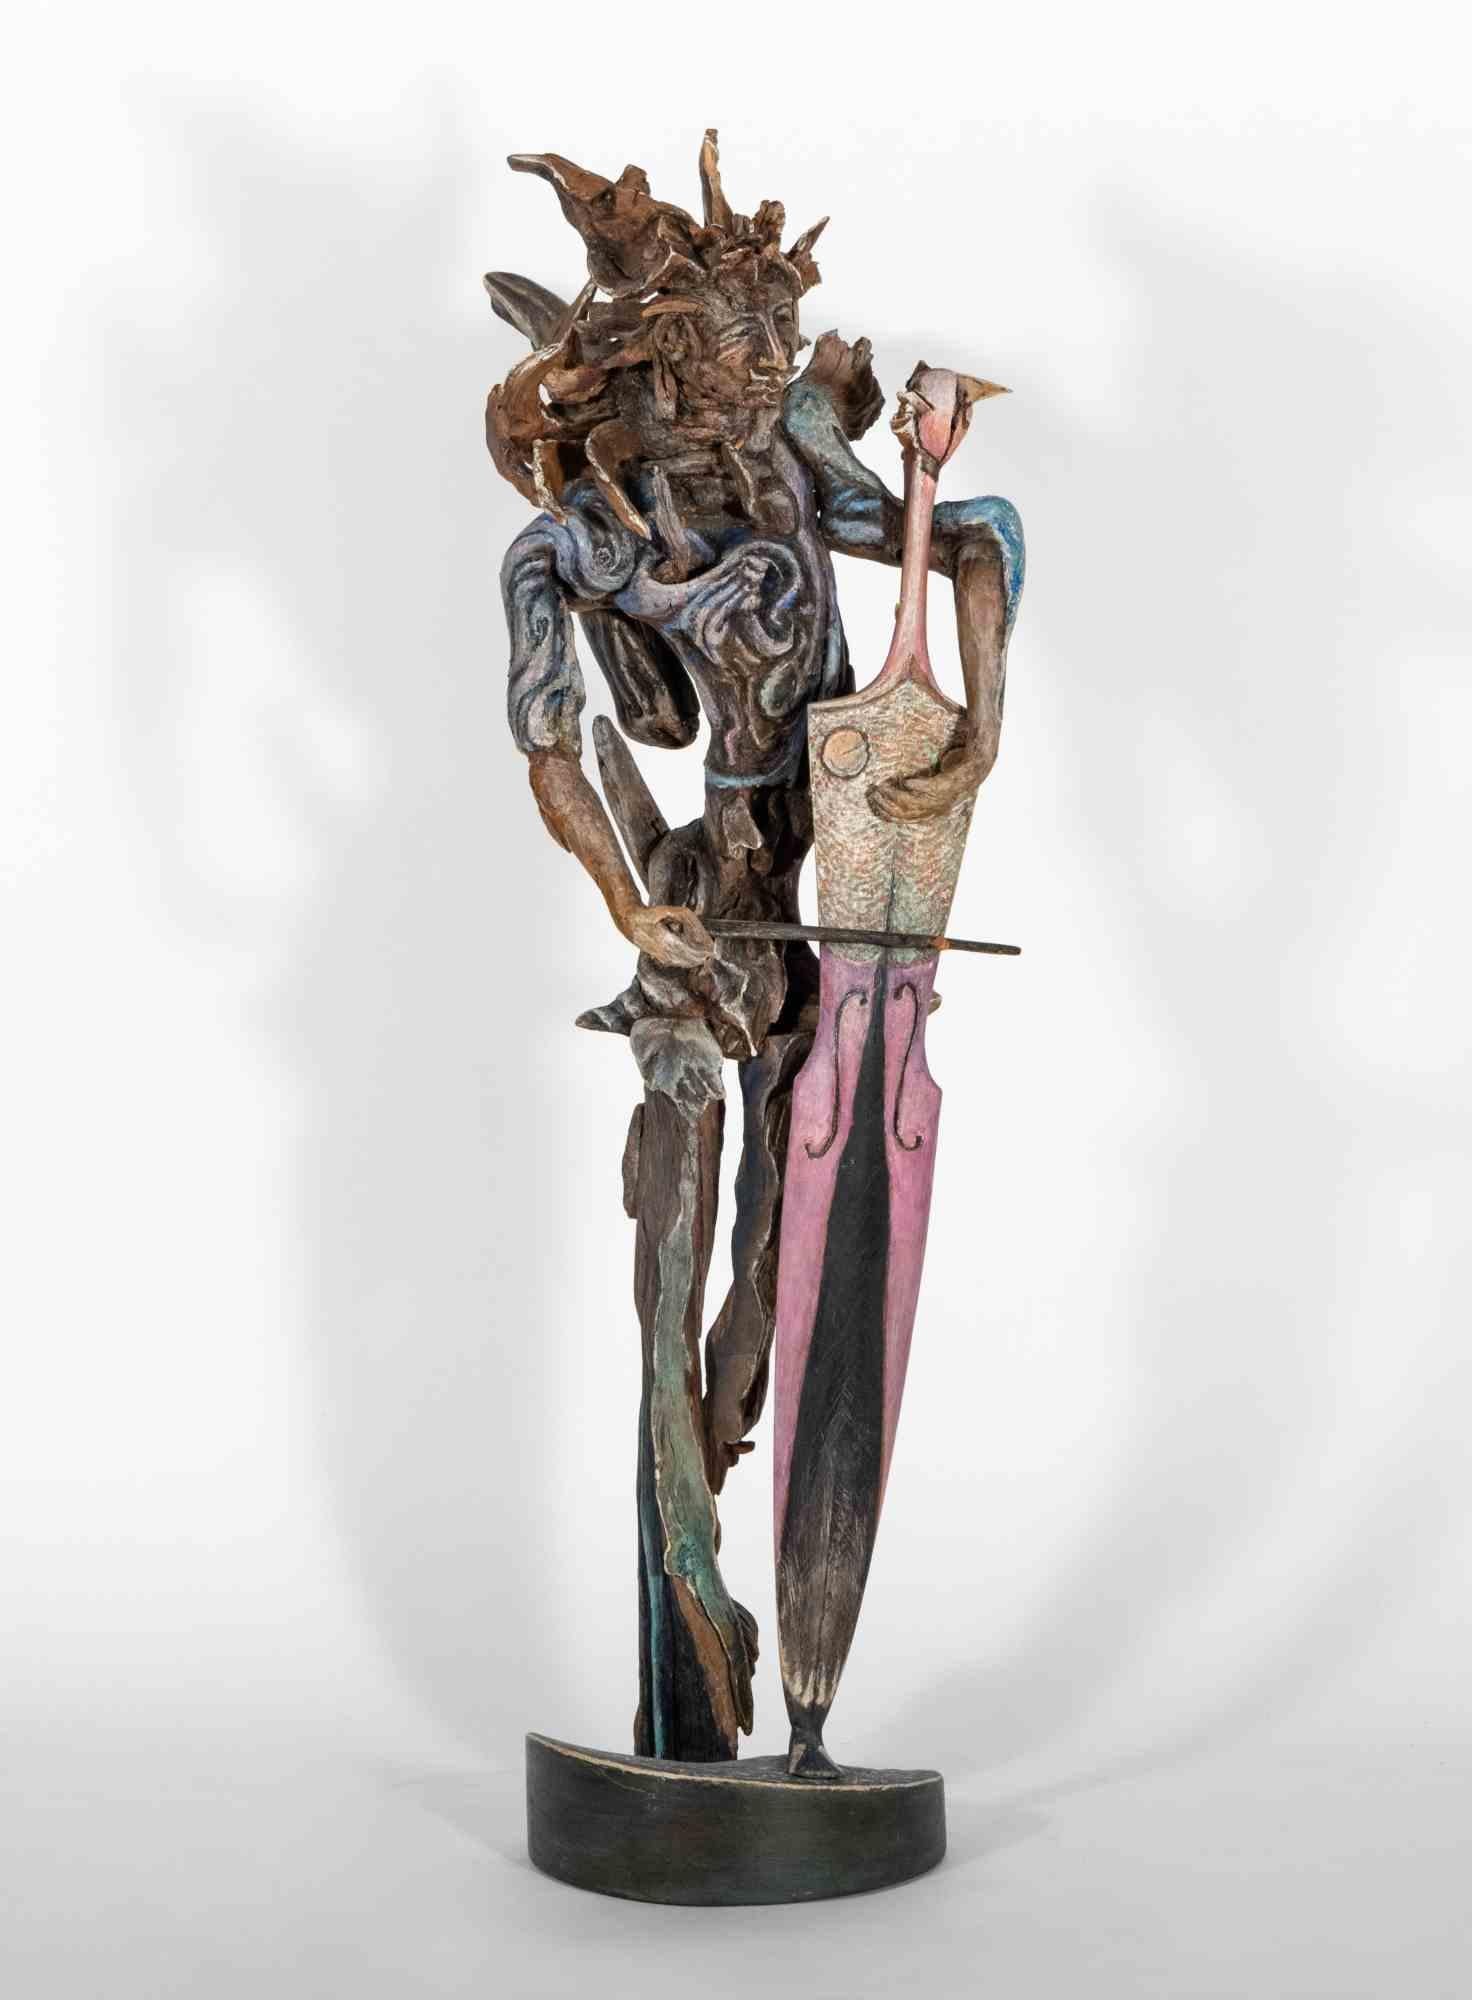 Sehr gut erhaltene Skulptur aus handbemaltem Holz des Bildhauers Lorenzo Servalli, die im Jahr 1998 die Beschwörung der Inspiration erzählt.  Wie ein einsamer Musiker, der einer farbenfrohen und mächtigen Symphonie Leben verleiht, symbolisiert durch